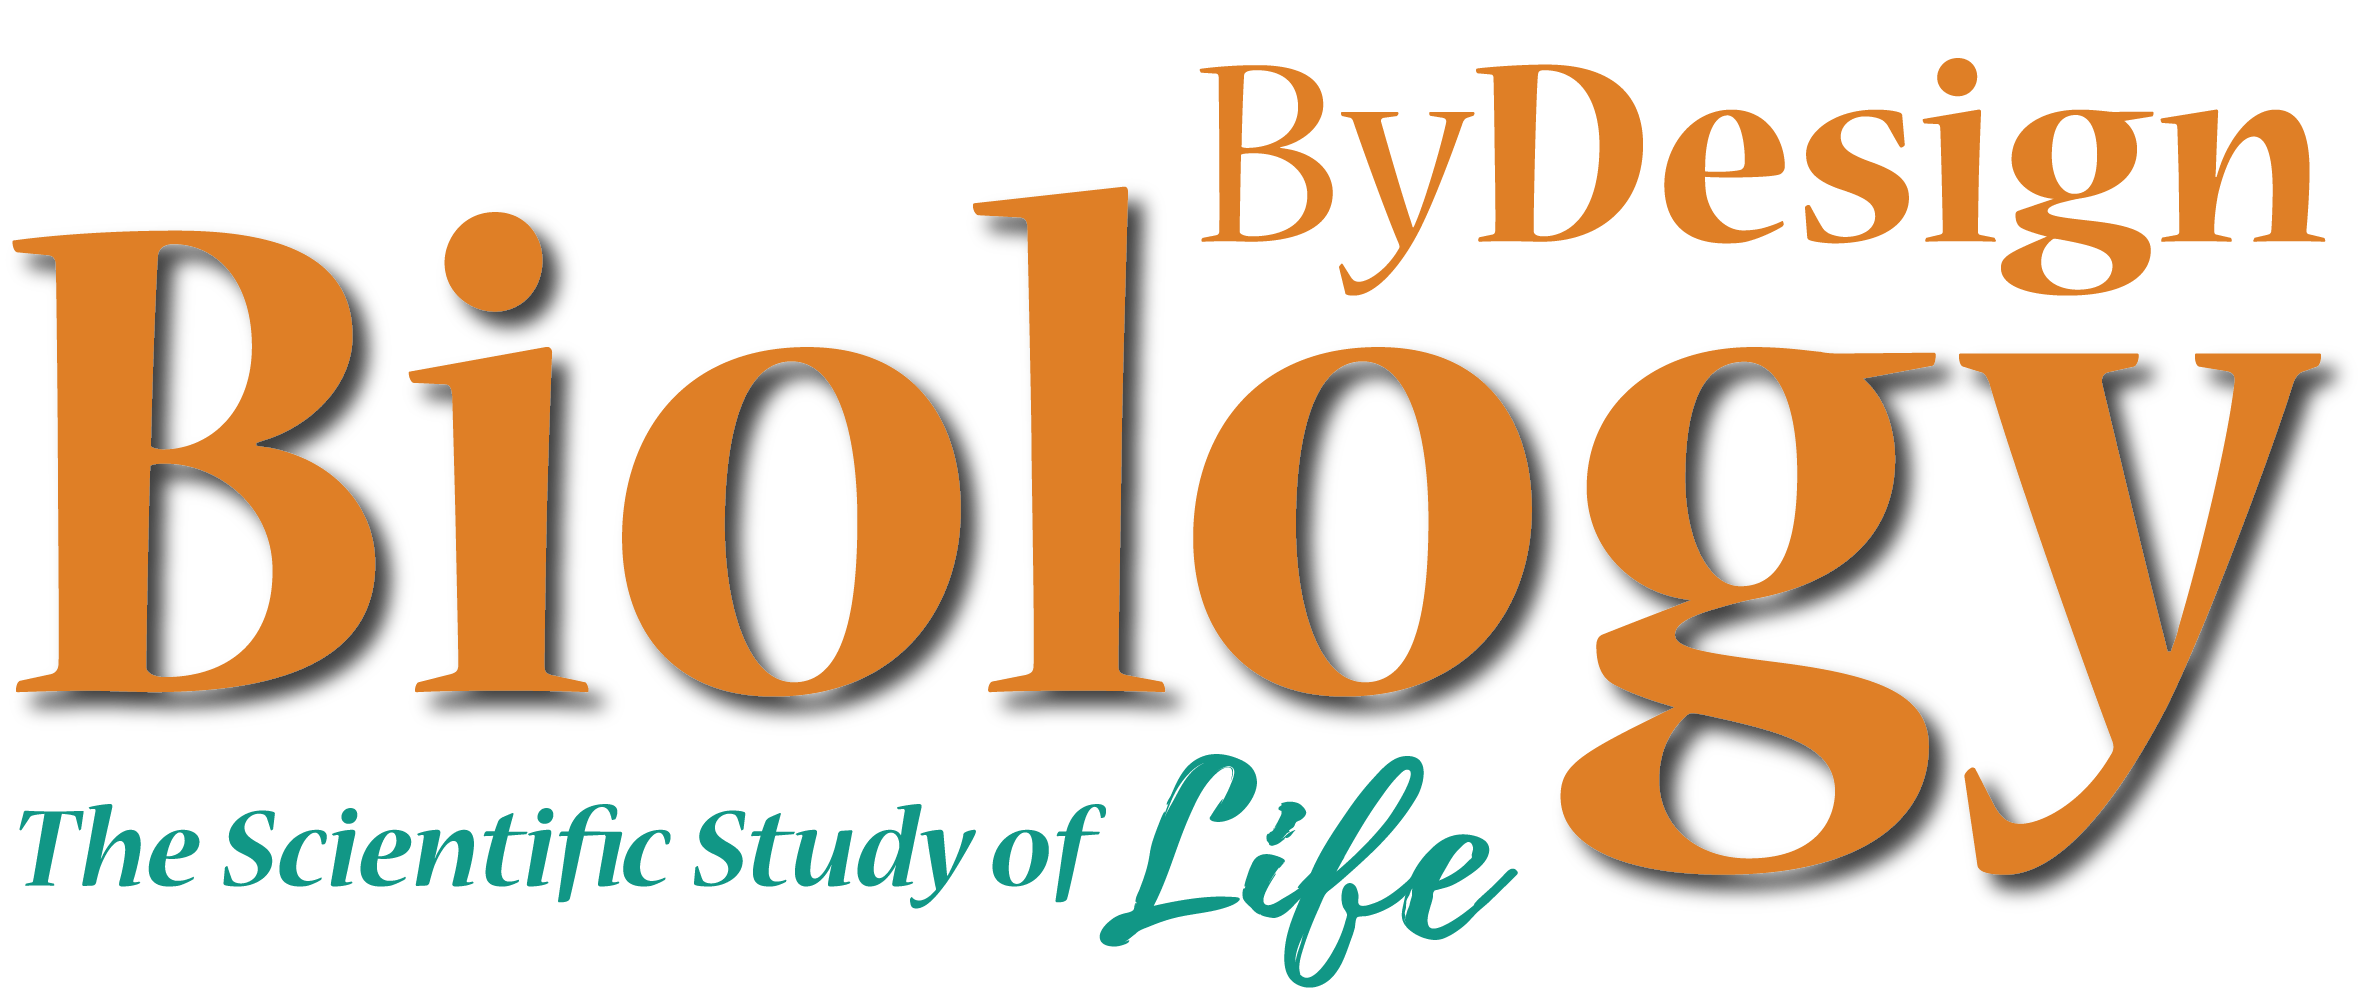 ByDesign Biology